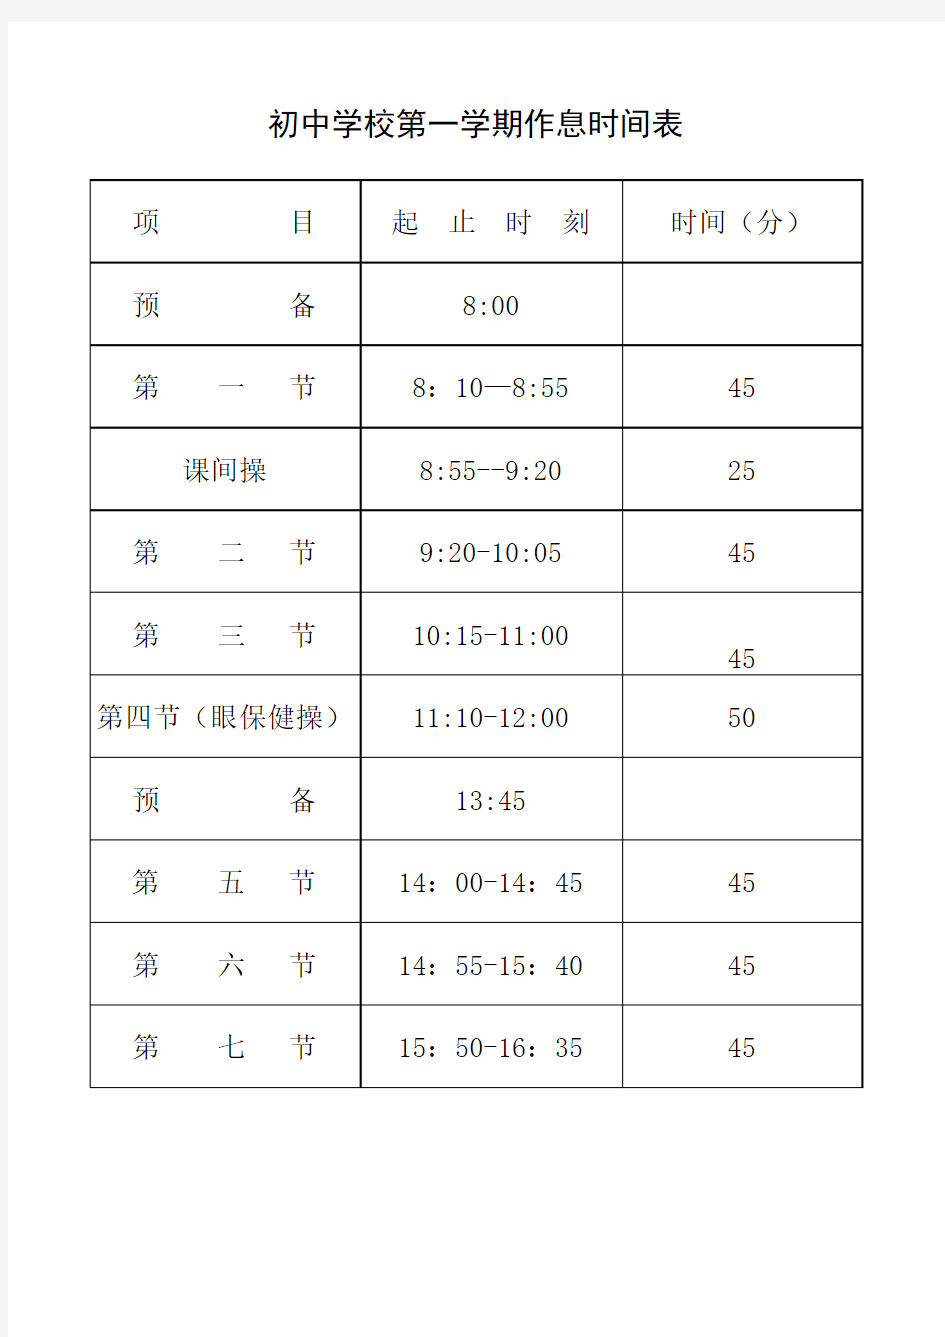 初中学校第一学期作息时间表(打印版)